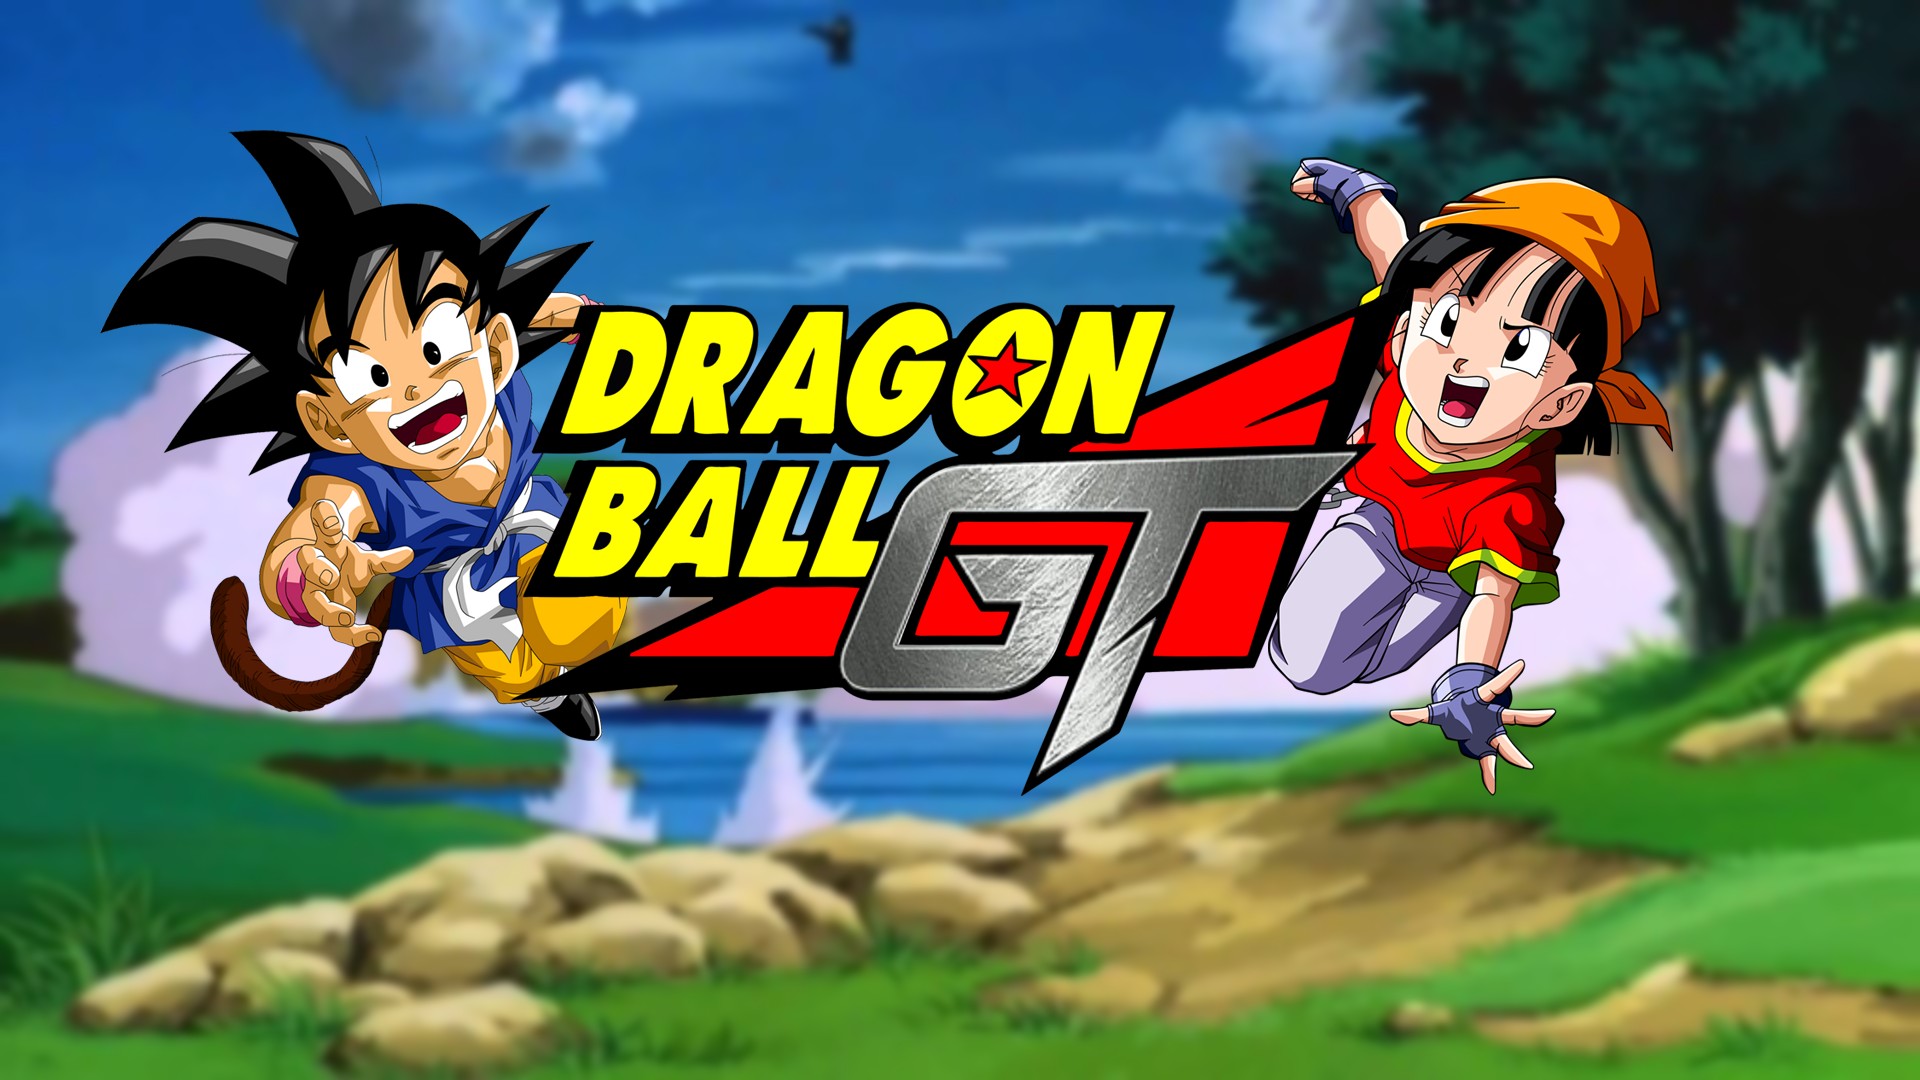 Dragon ball clássico - Son Goku  Wallpaper do goku, Dragon ball gt, Papel  de parede wallpaper